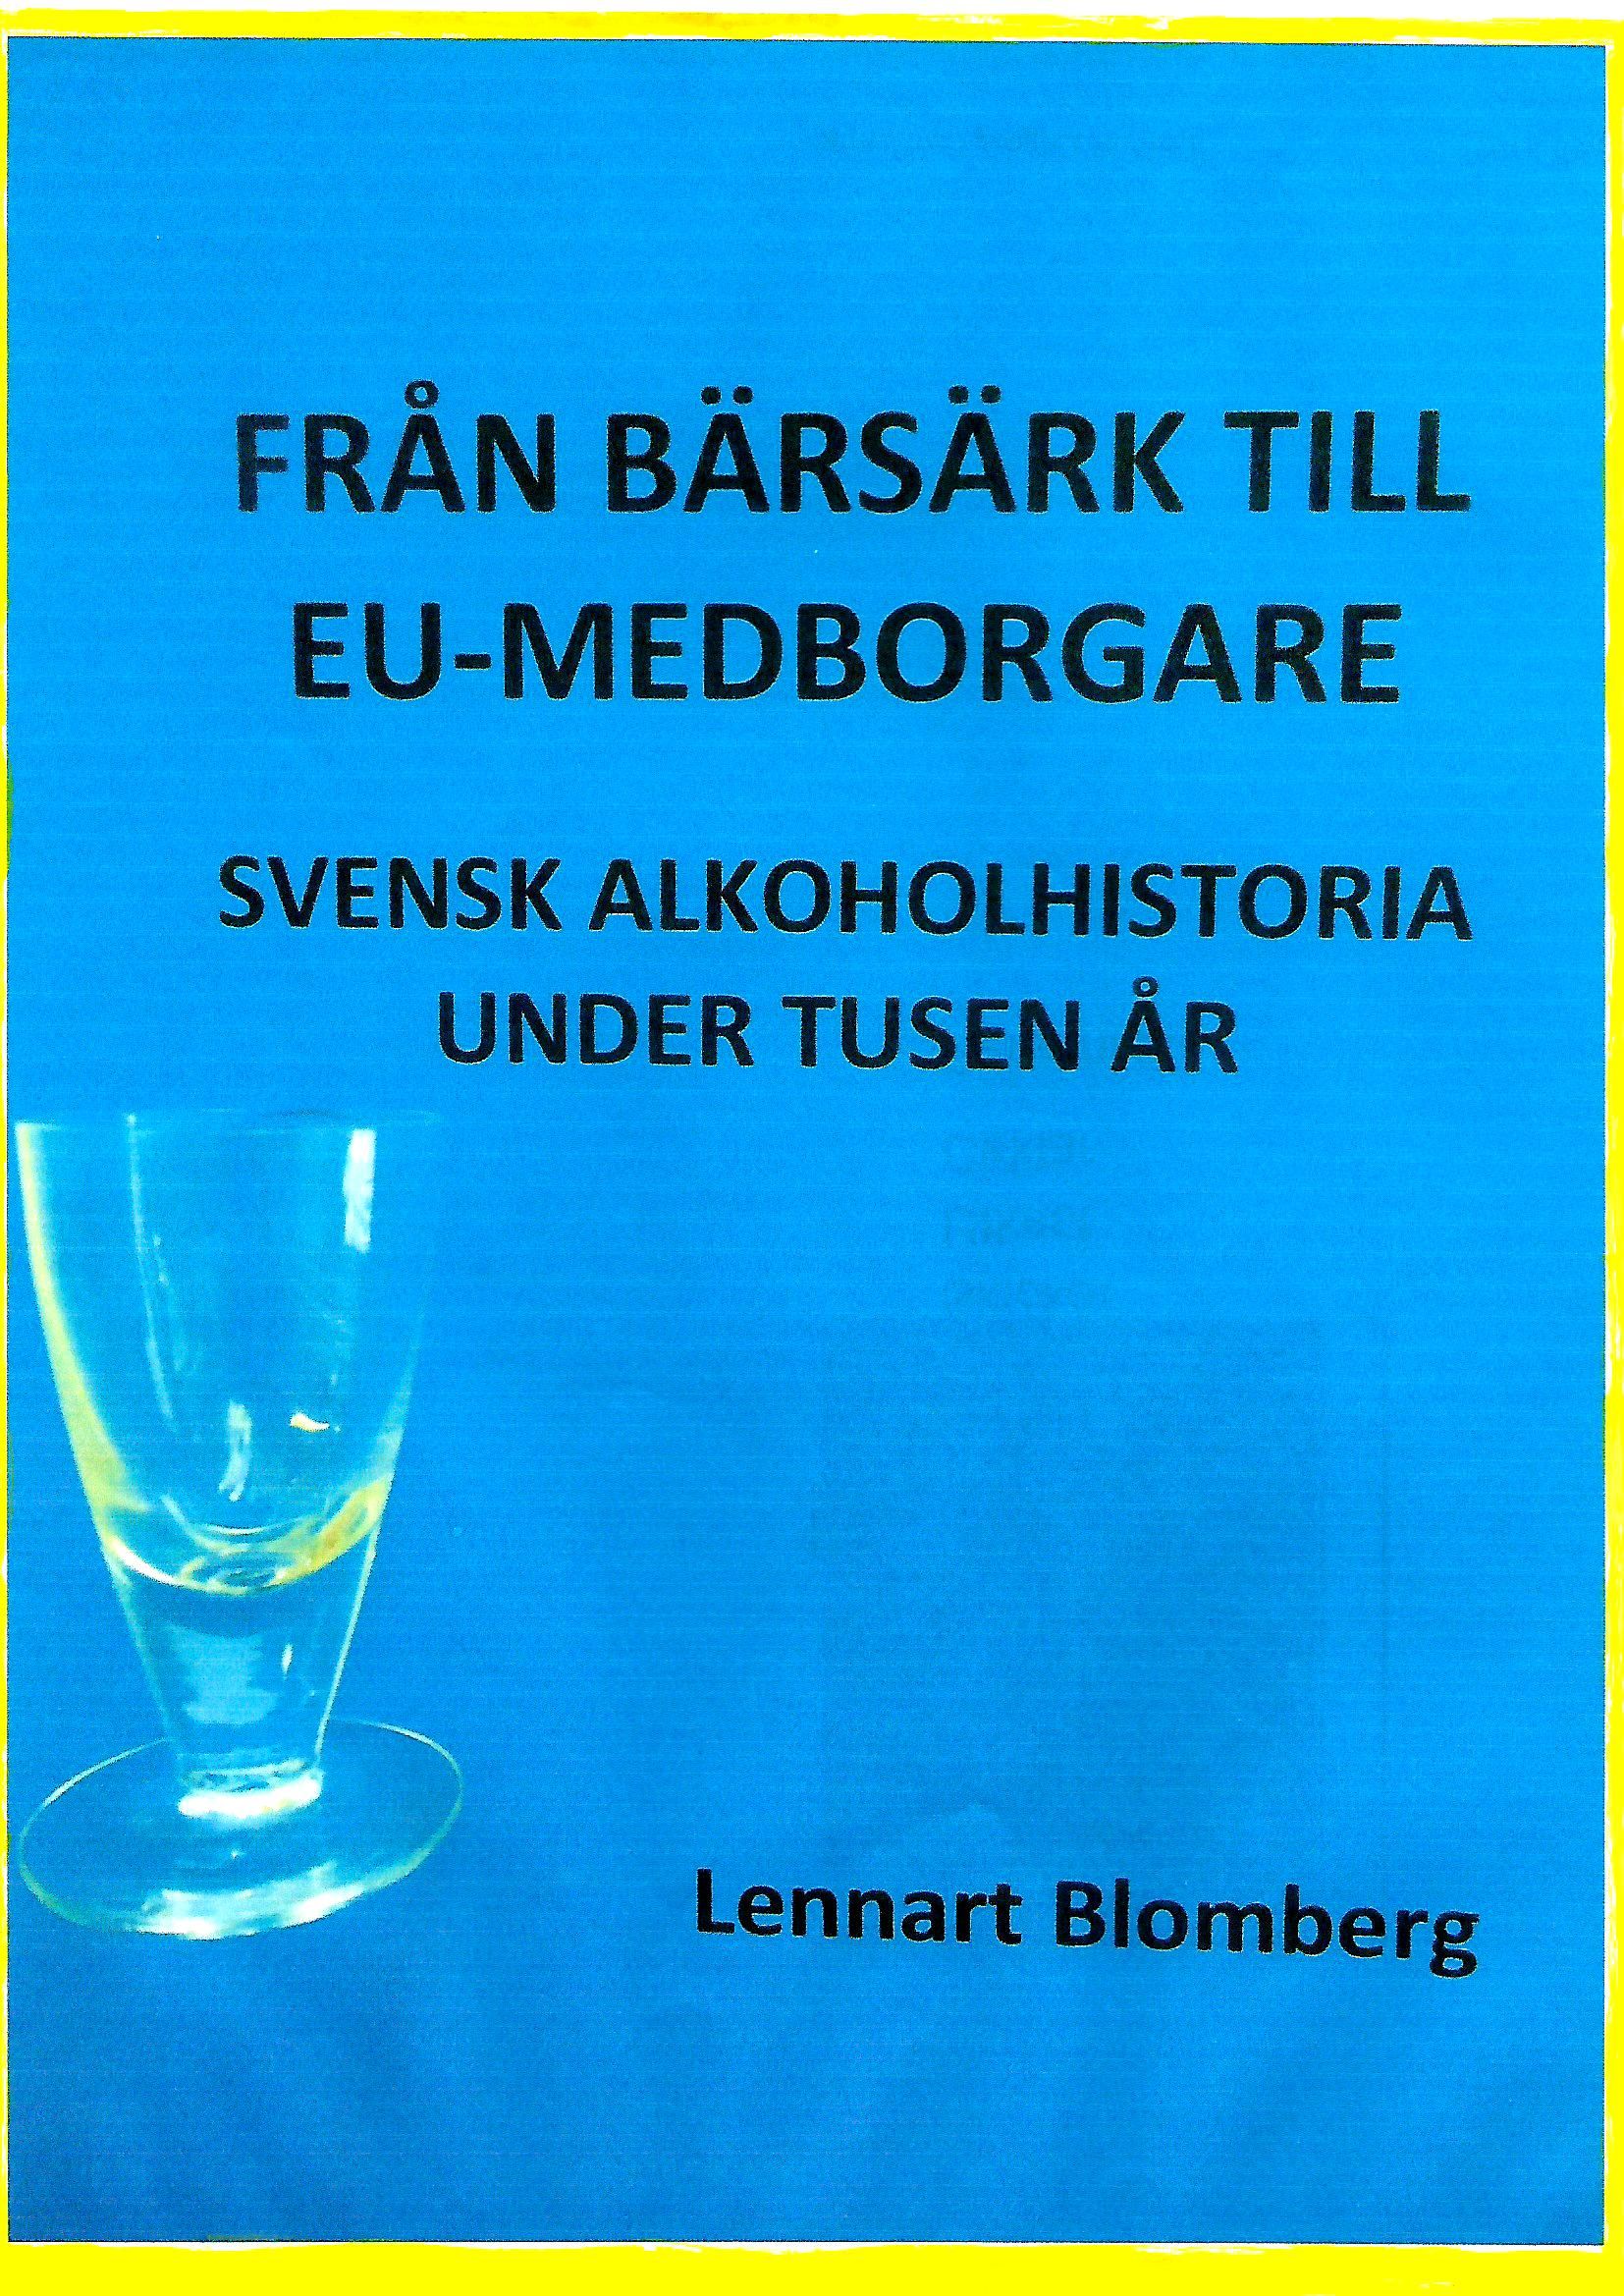 Från bärsärk till EU-medborgare, e-bog af Lennart Blomberg